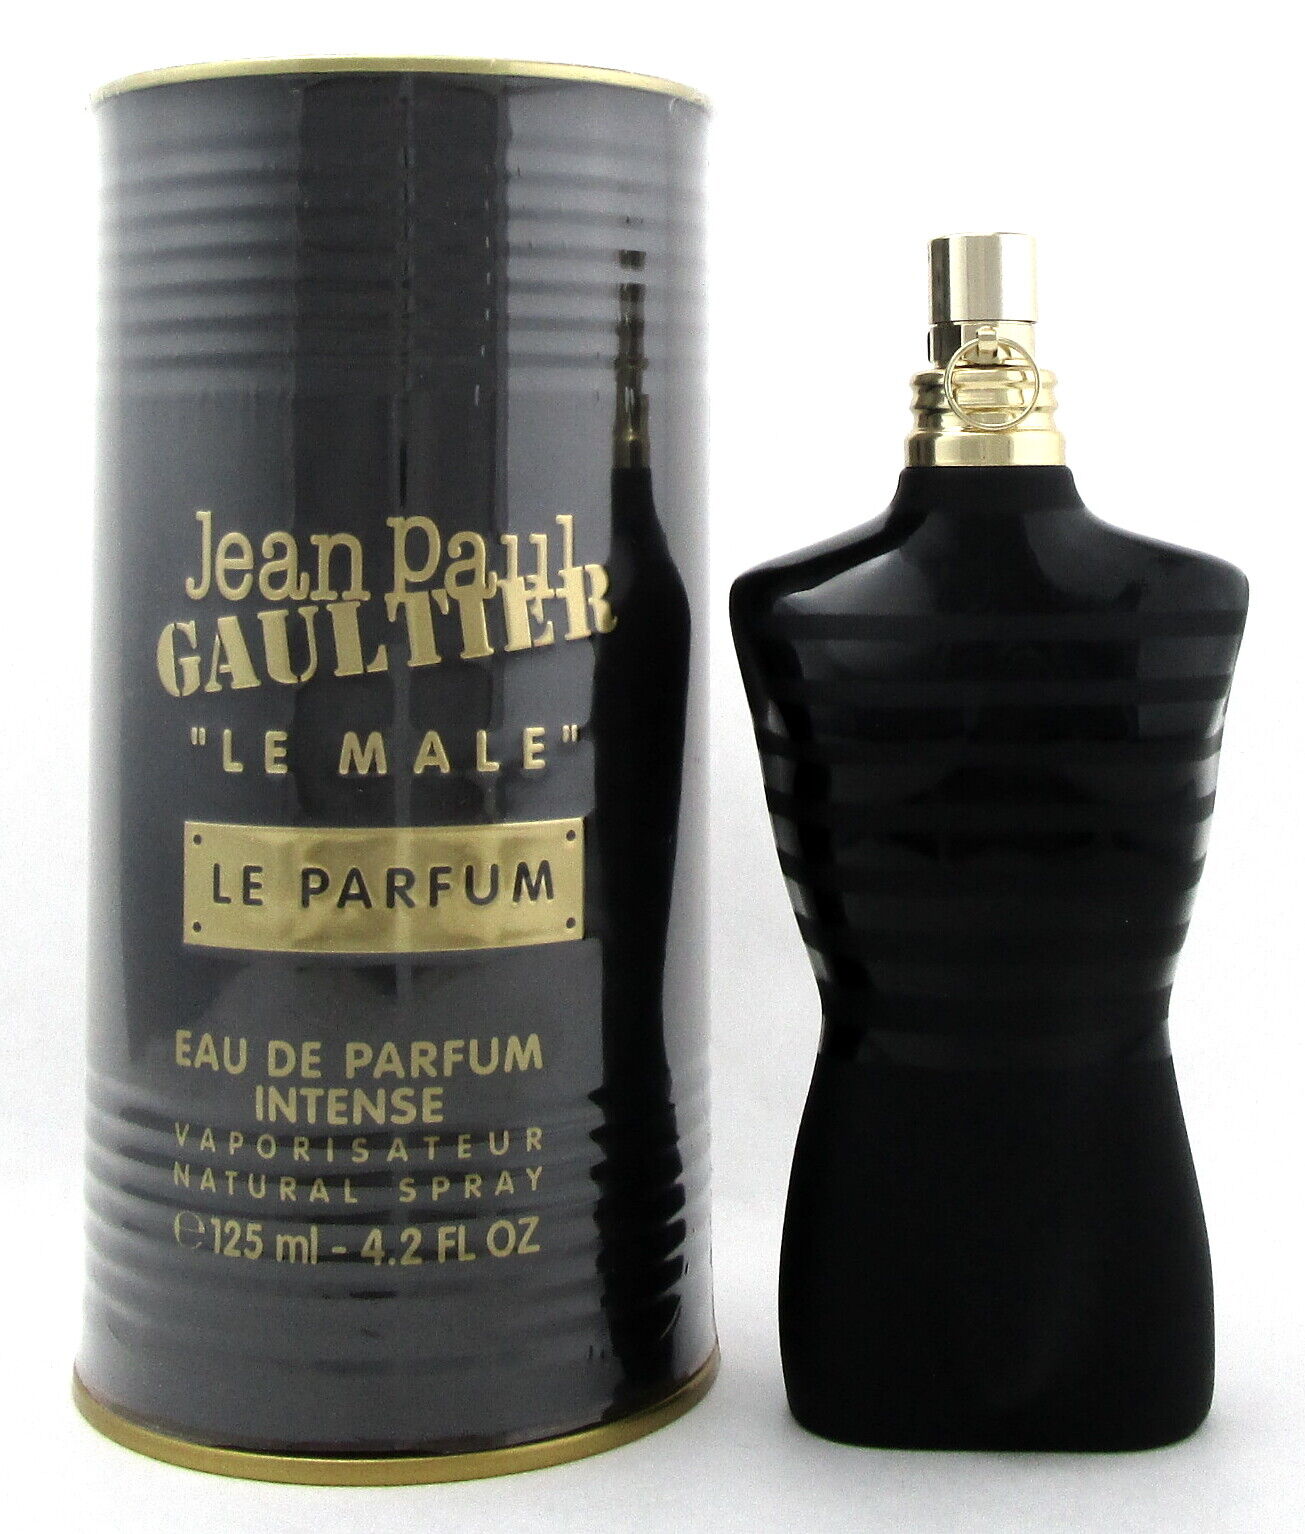 Jean Paul Gaultier Le Male LE PARFUM 4.2 oz. Eau de Parfum INTENSE Spray NEW BOX